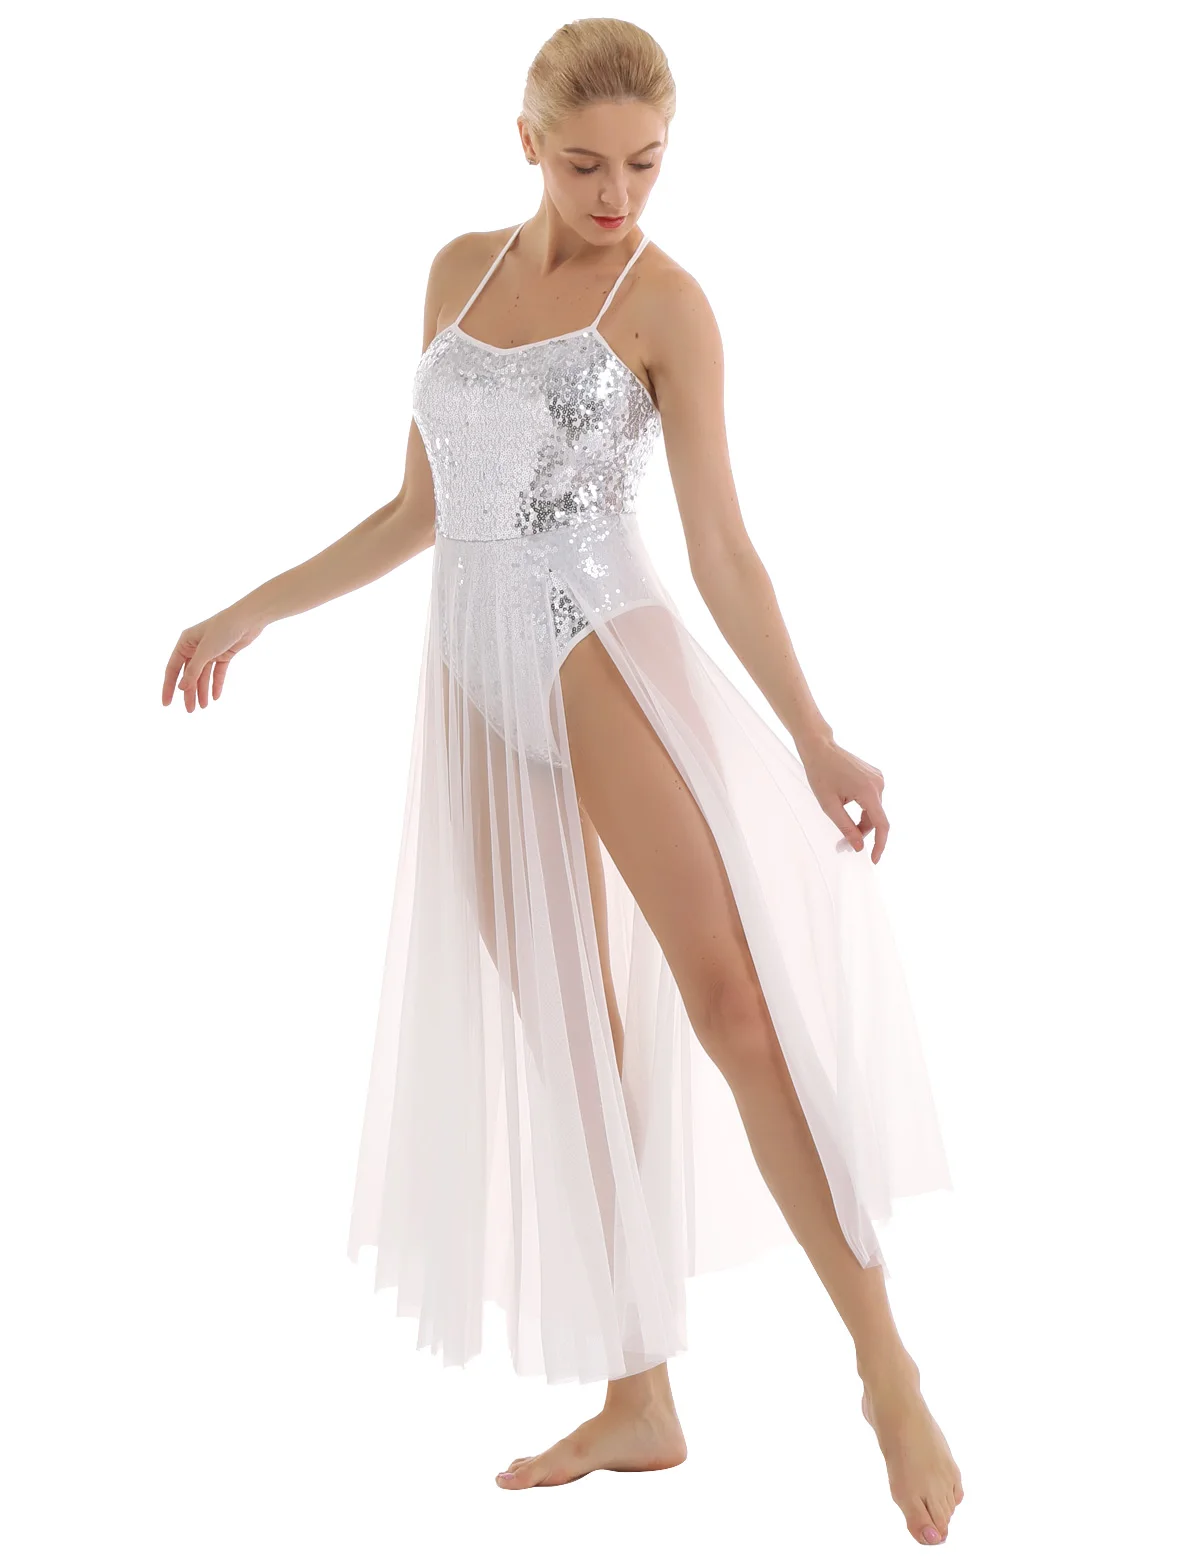 Женское балетное платье Лирический танцевальный костюм Спагетти ремень без рукавов блестками балетное трико платье с Сплит сеткой макси юбка